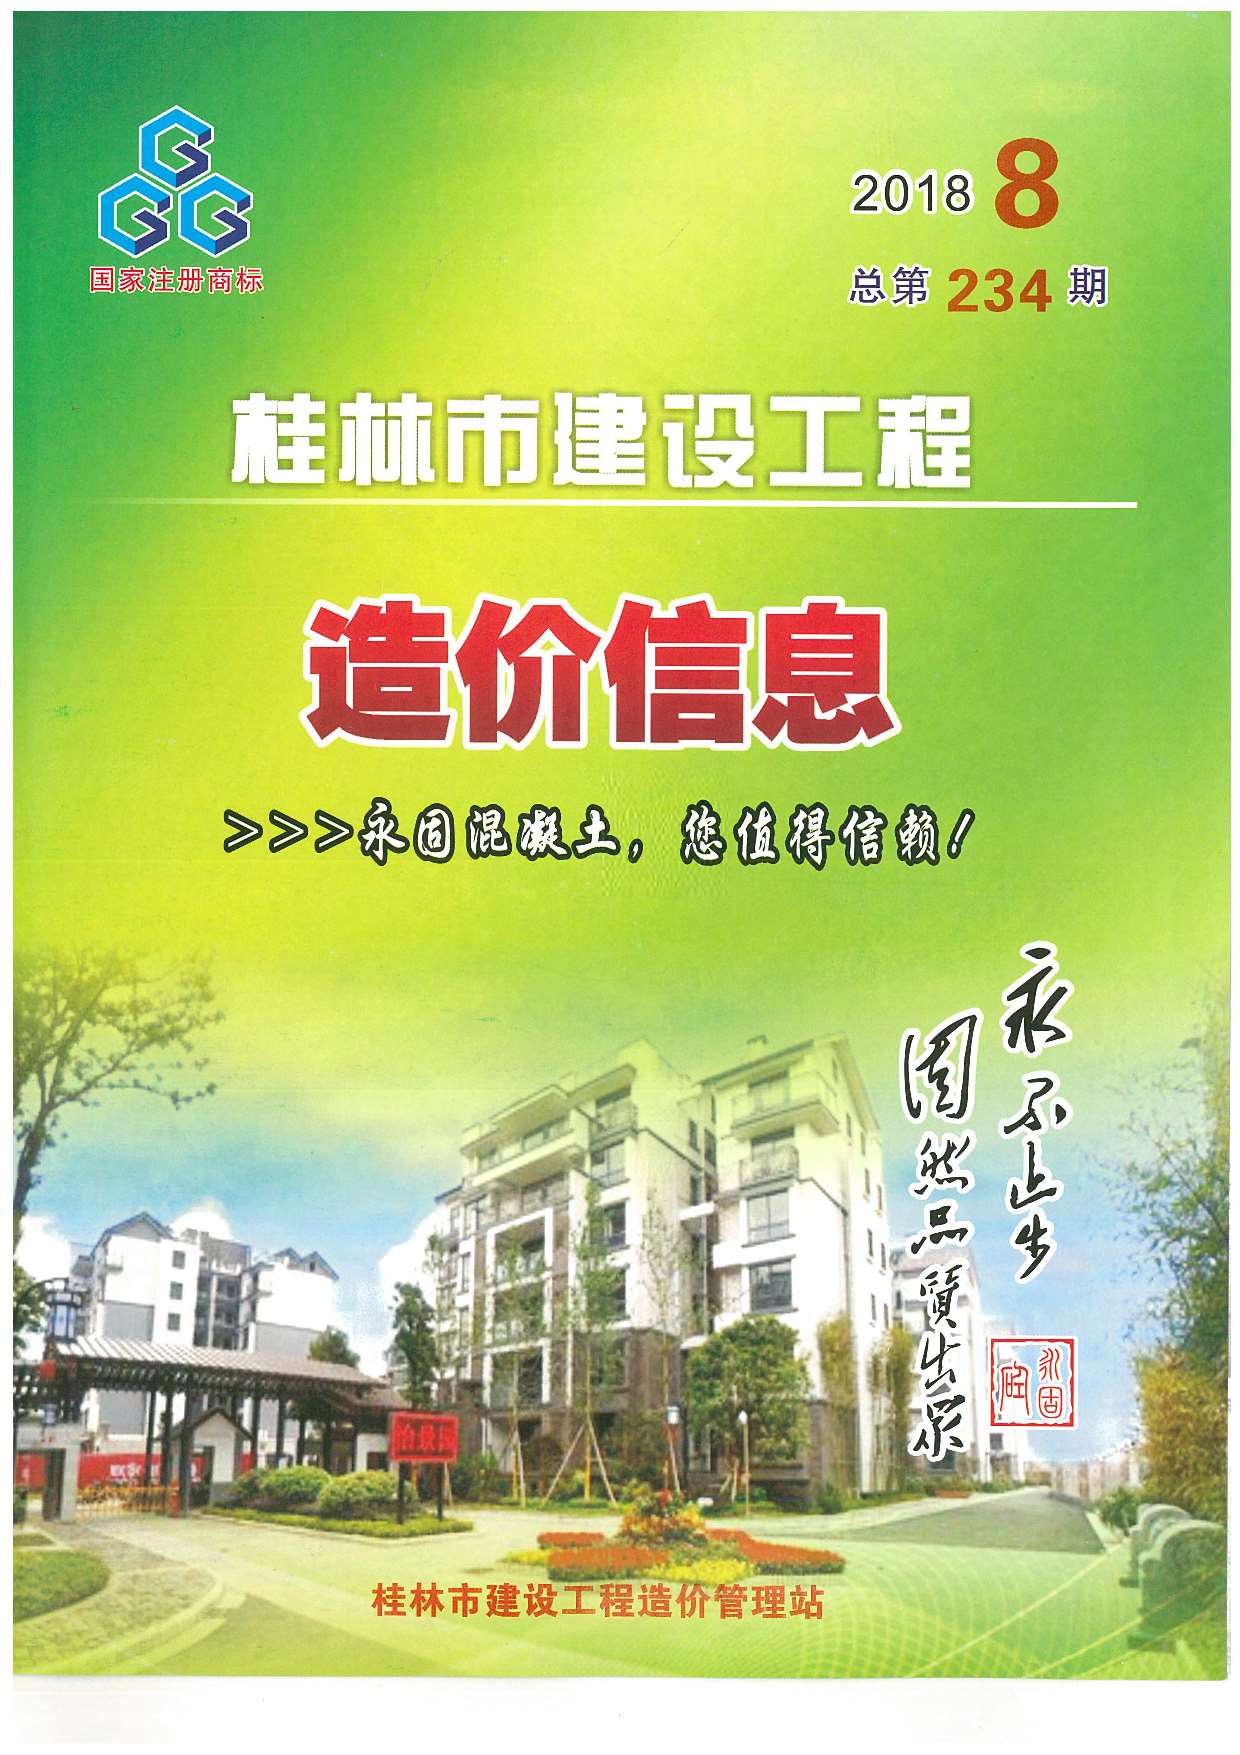 桂林市2018年8月建设工程造价信息造价库信息价